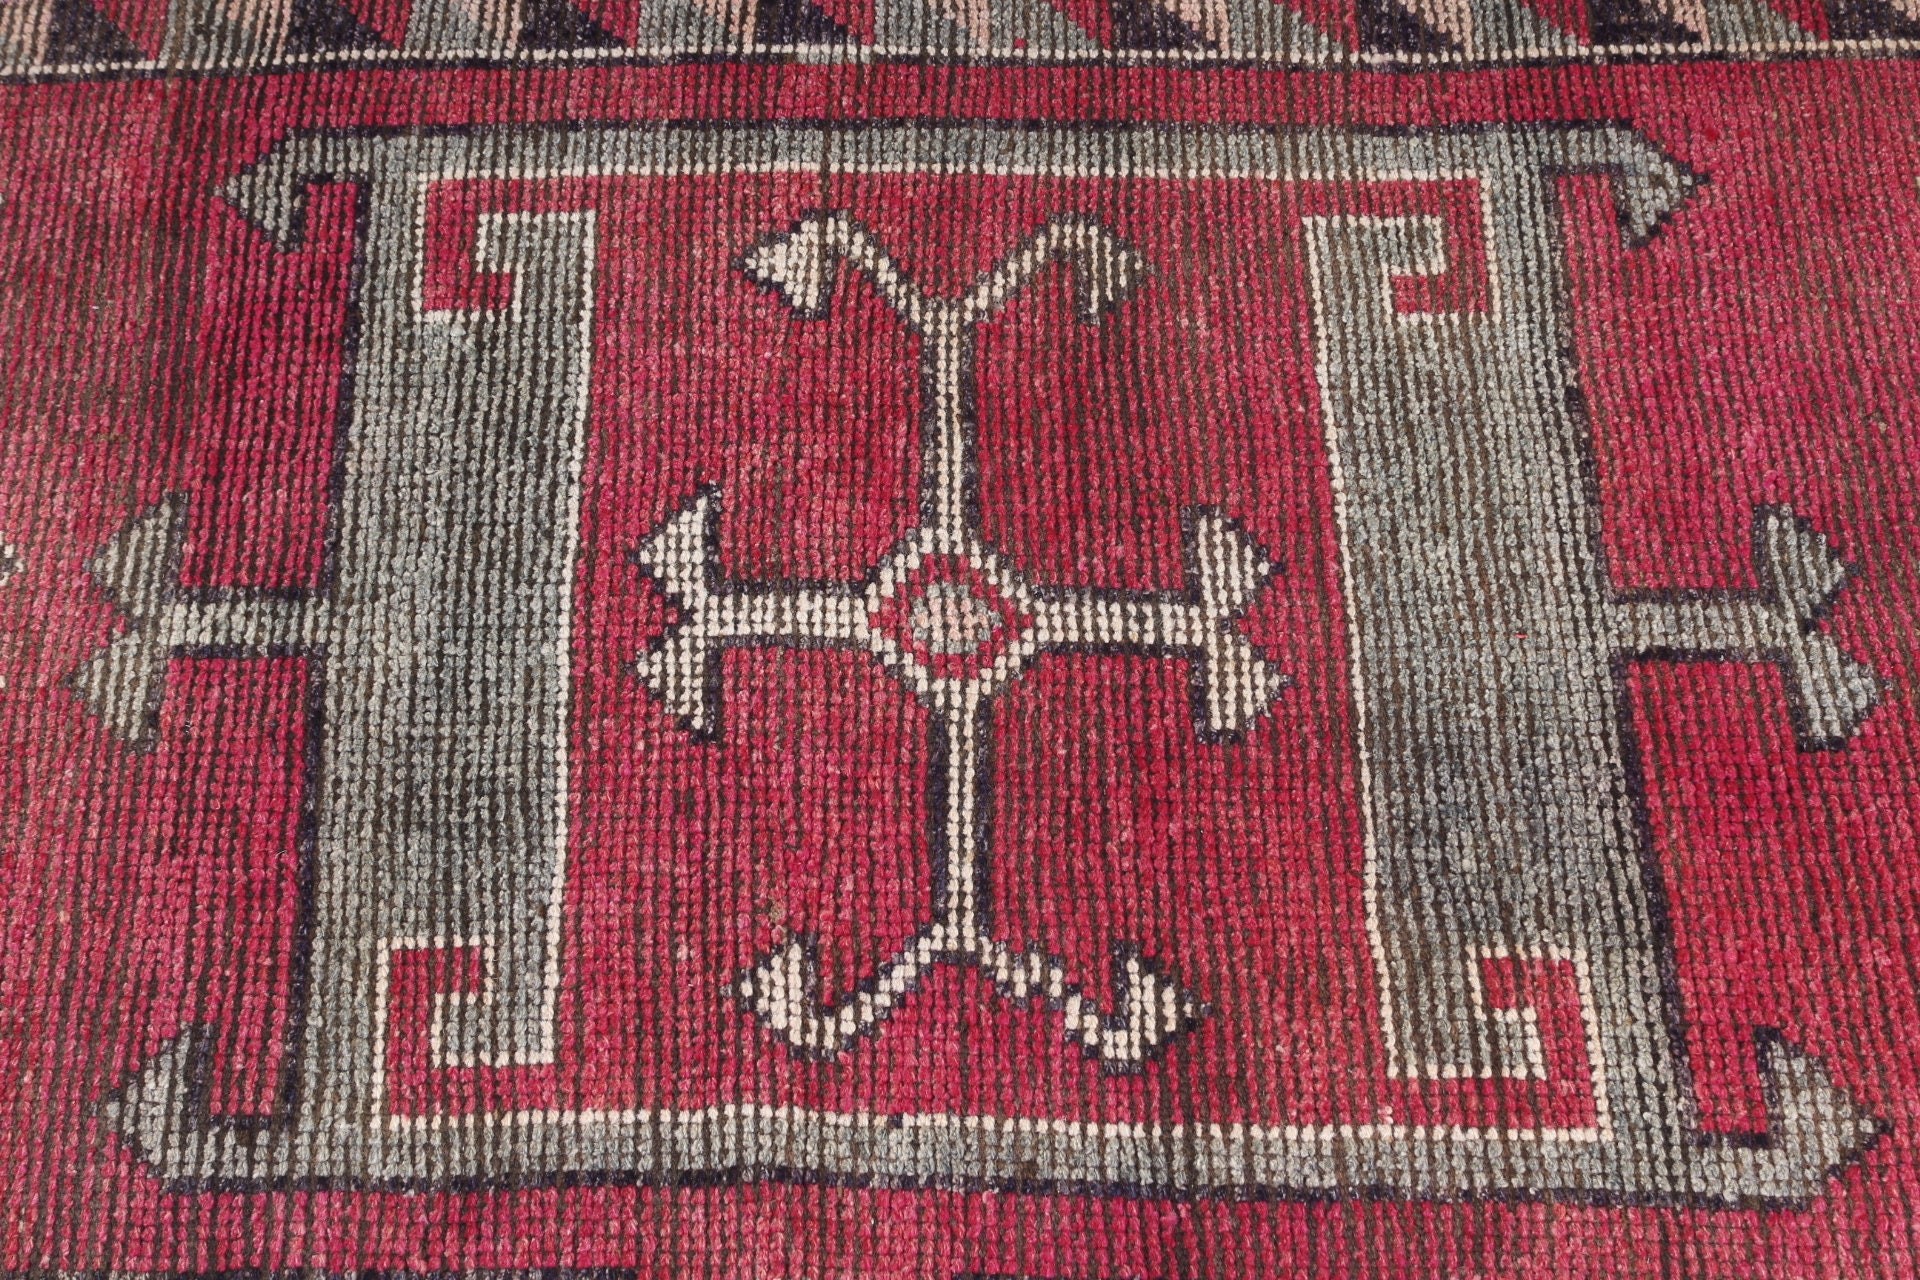 Wool Rug, Turkish Rugs, Rugs for Hallway, Antique Rug, 2.9x11.4 ft Runner Rug, Hallway Rug, Vintage Rugs, Corridor Rugs, Pink Kitchen Rug